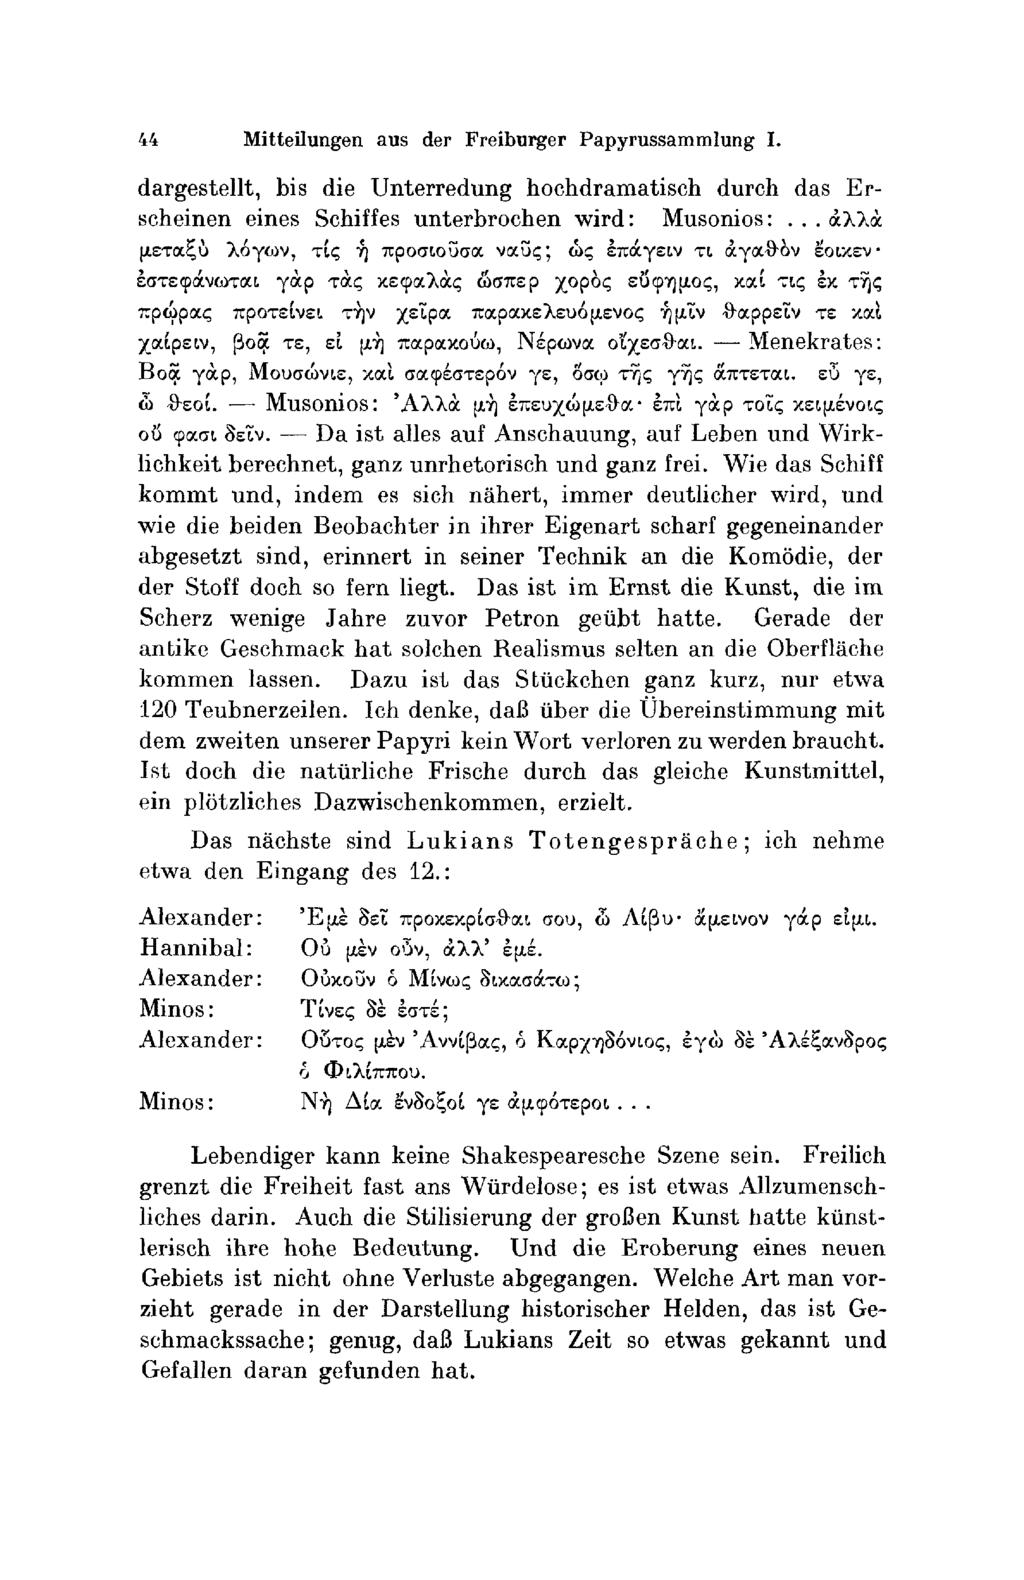 44 Mitteilungen aus der Freiburger Paρyrussammlung I. dargestellt, bis die Unterredung hochdramatisch durch das Εrscheinen eines Schiffes unterbrochen wird: Μusοniοs:.